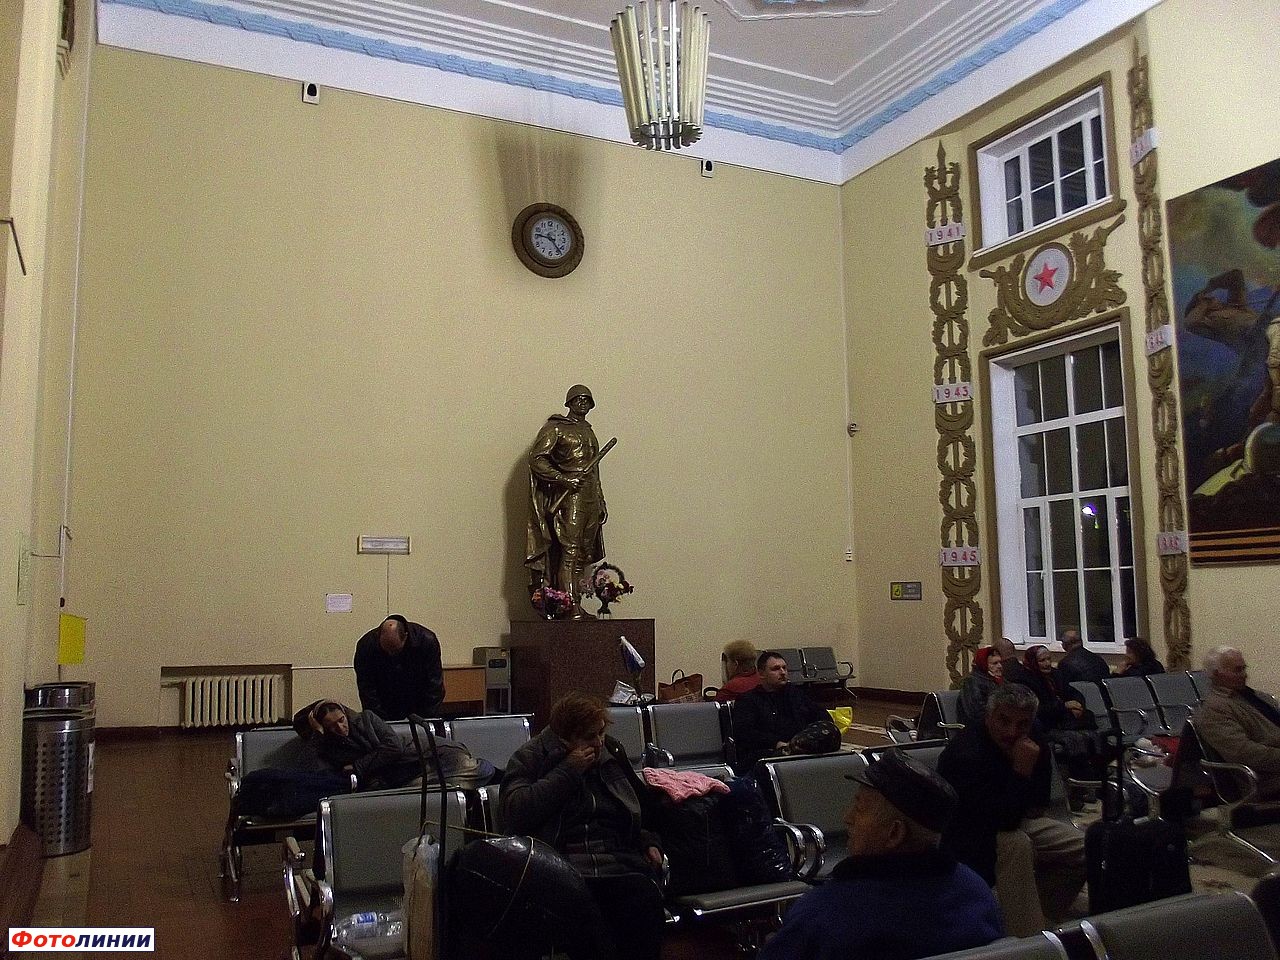 Скульптура в зале ожидания